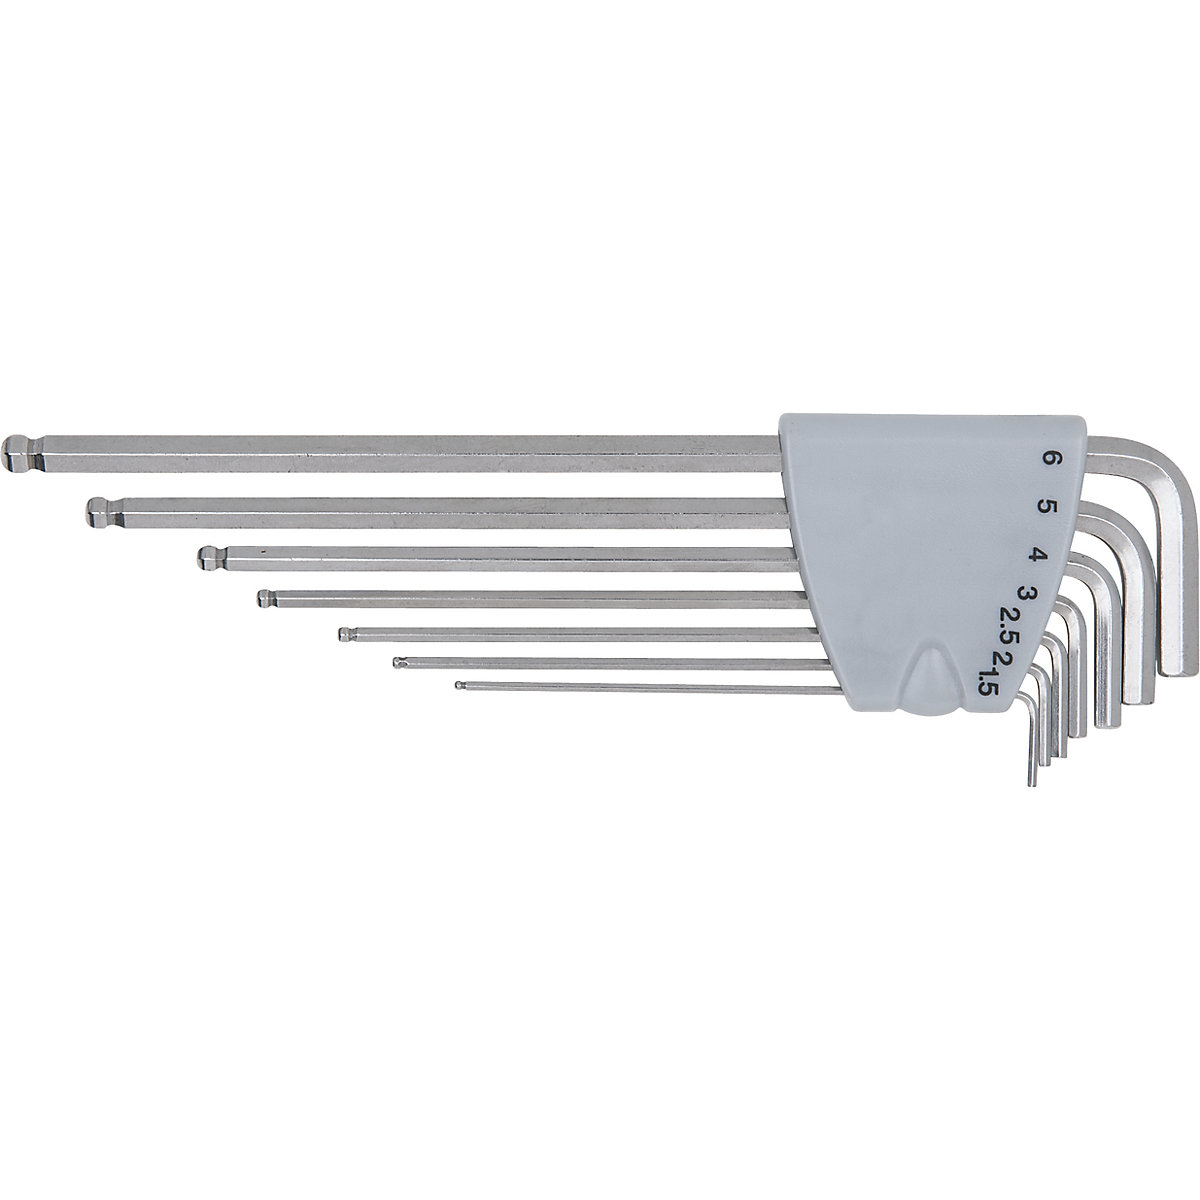 Komplet kotnih ključev iz nerjavnega jekla XL – KS Tools